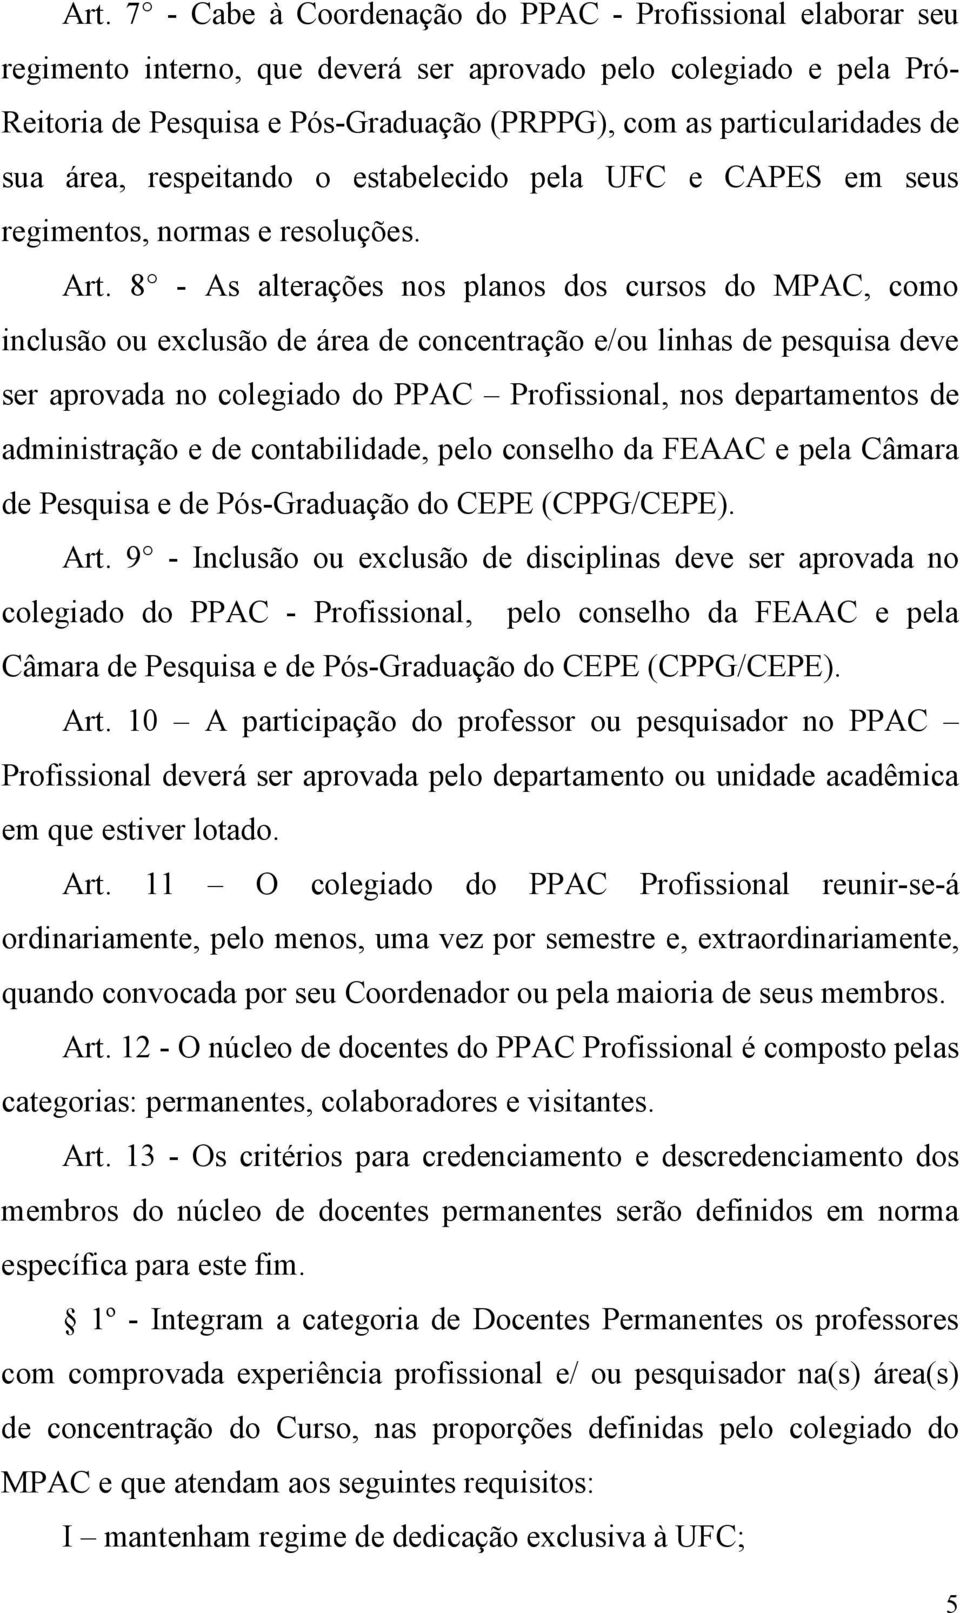 8 - As alterações nos planos dos cursos do MPAC, como inclusão ou exclusão de área de concentração e/ou linhas de pesquisa deve ser aprovada no colegiado do PPAC Profissional, nos departamentos de